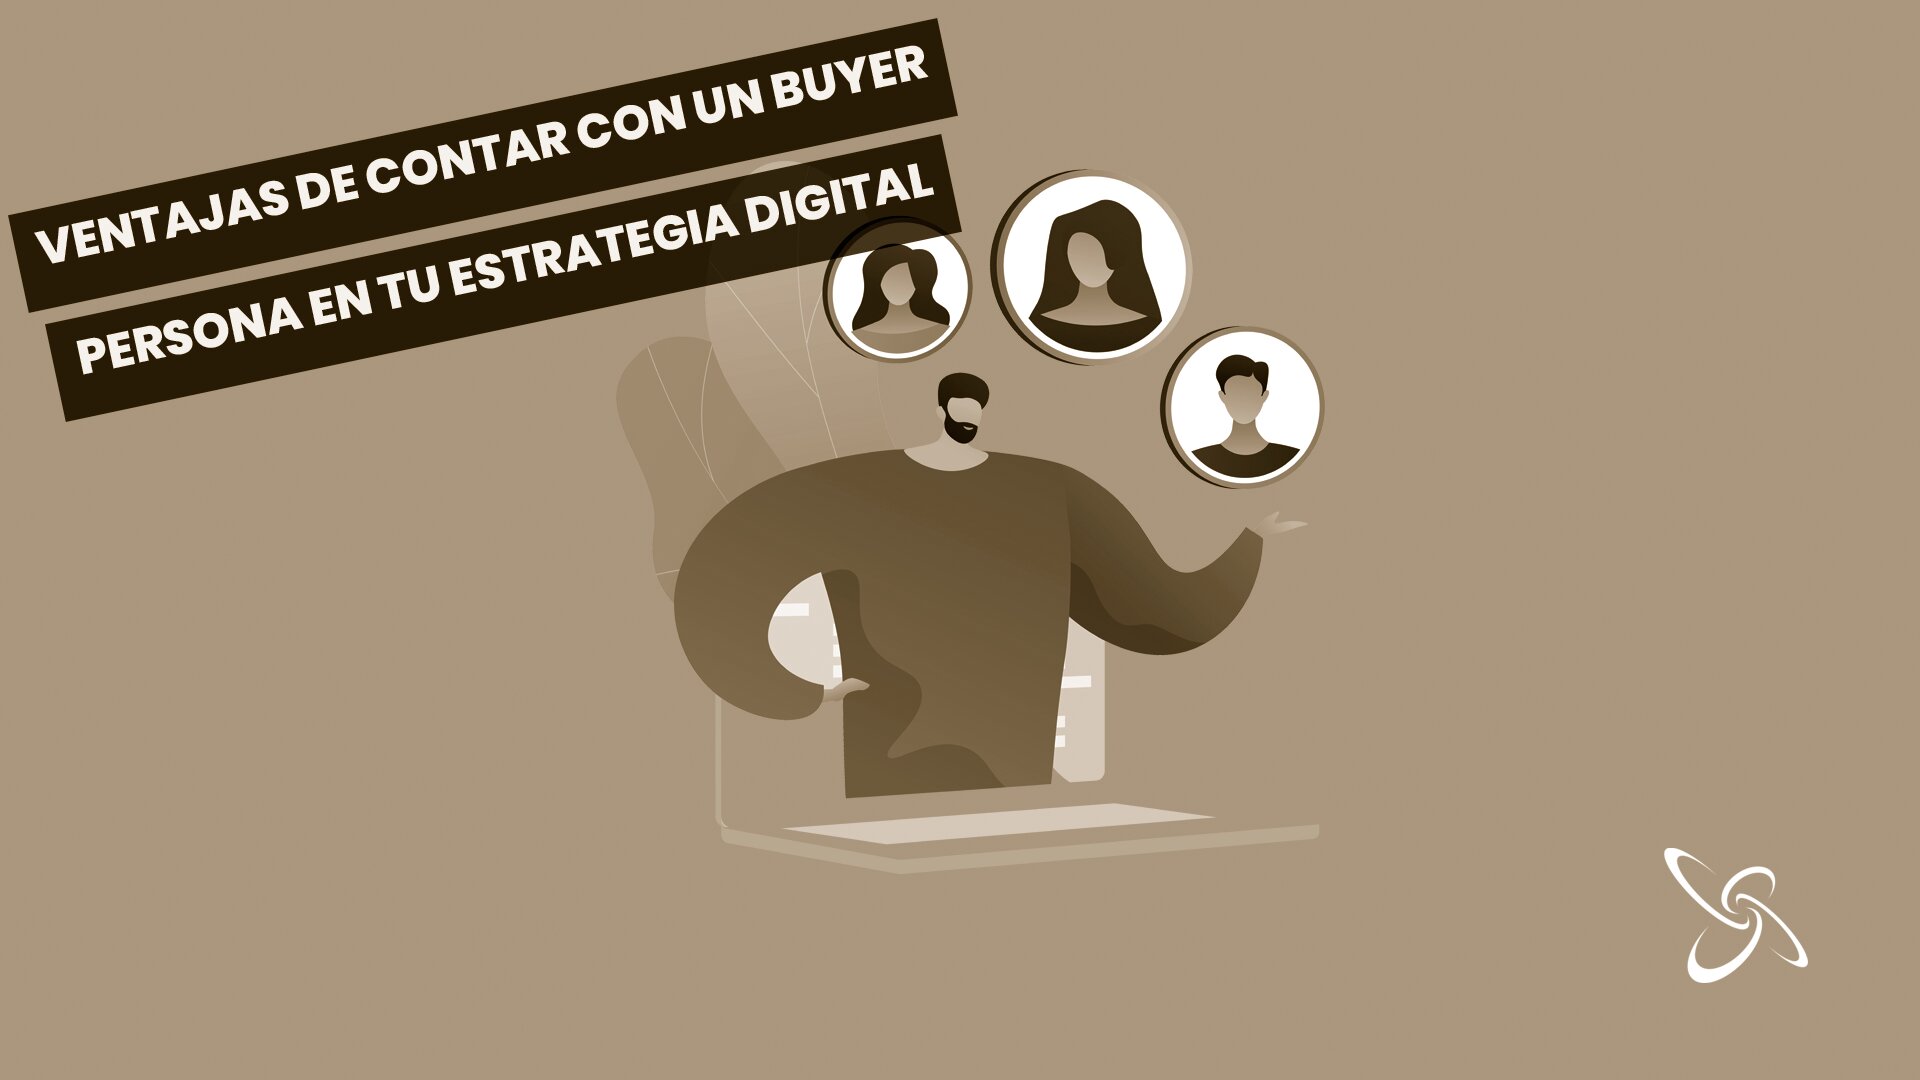 Avantatges de comptar amb un buyer persona en la teva estratègia digital